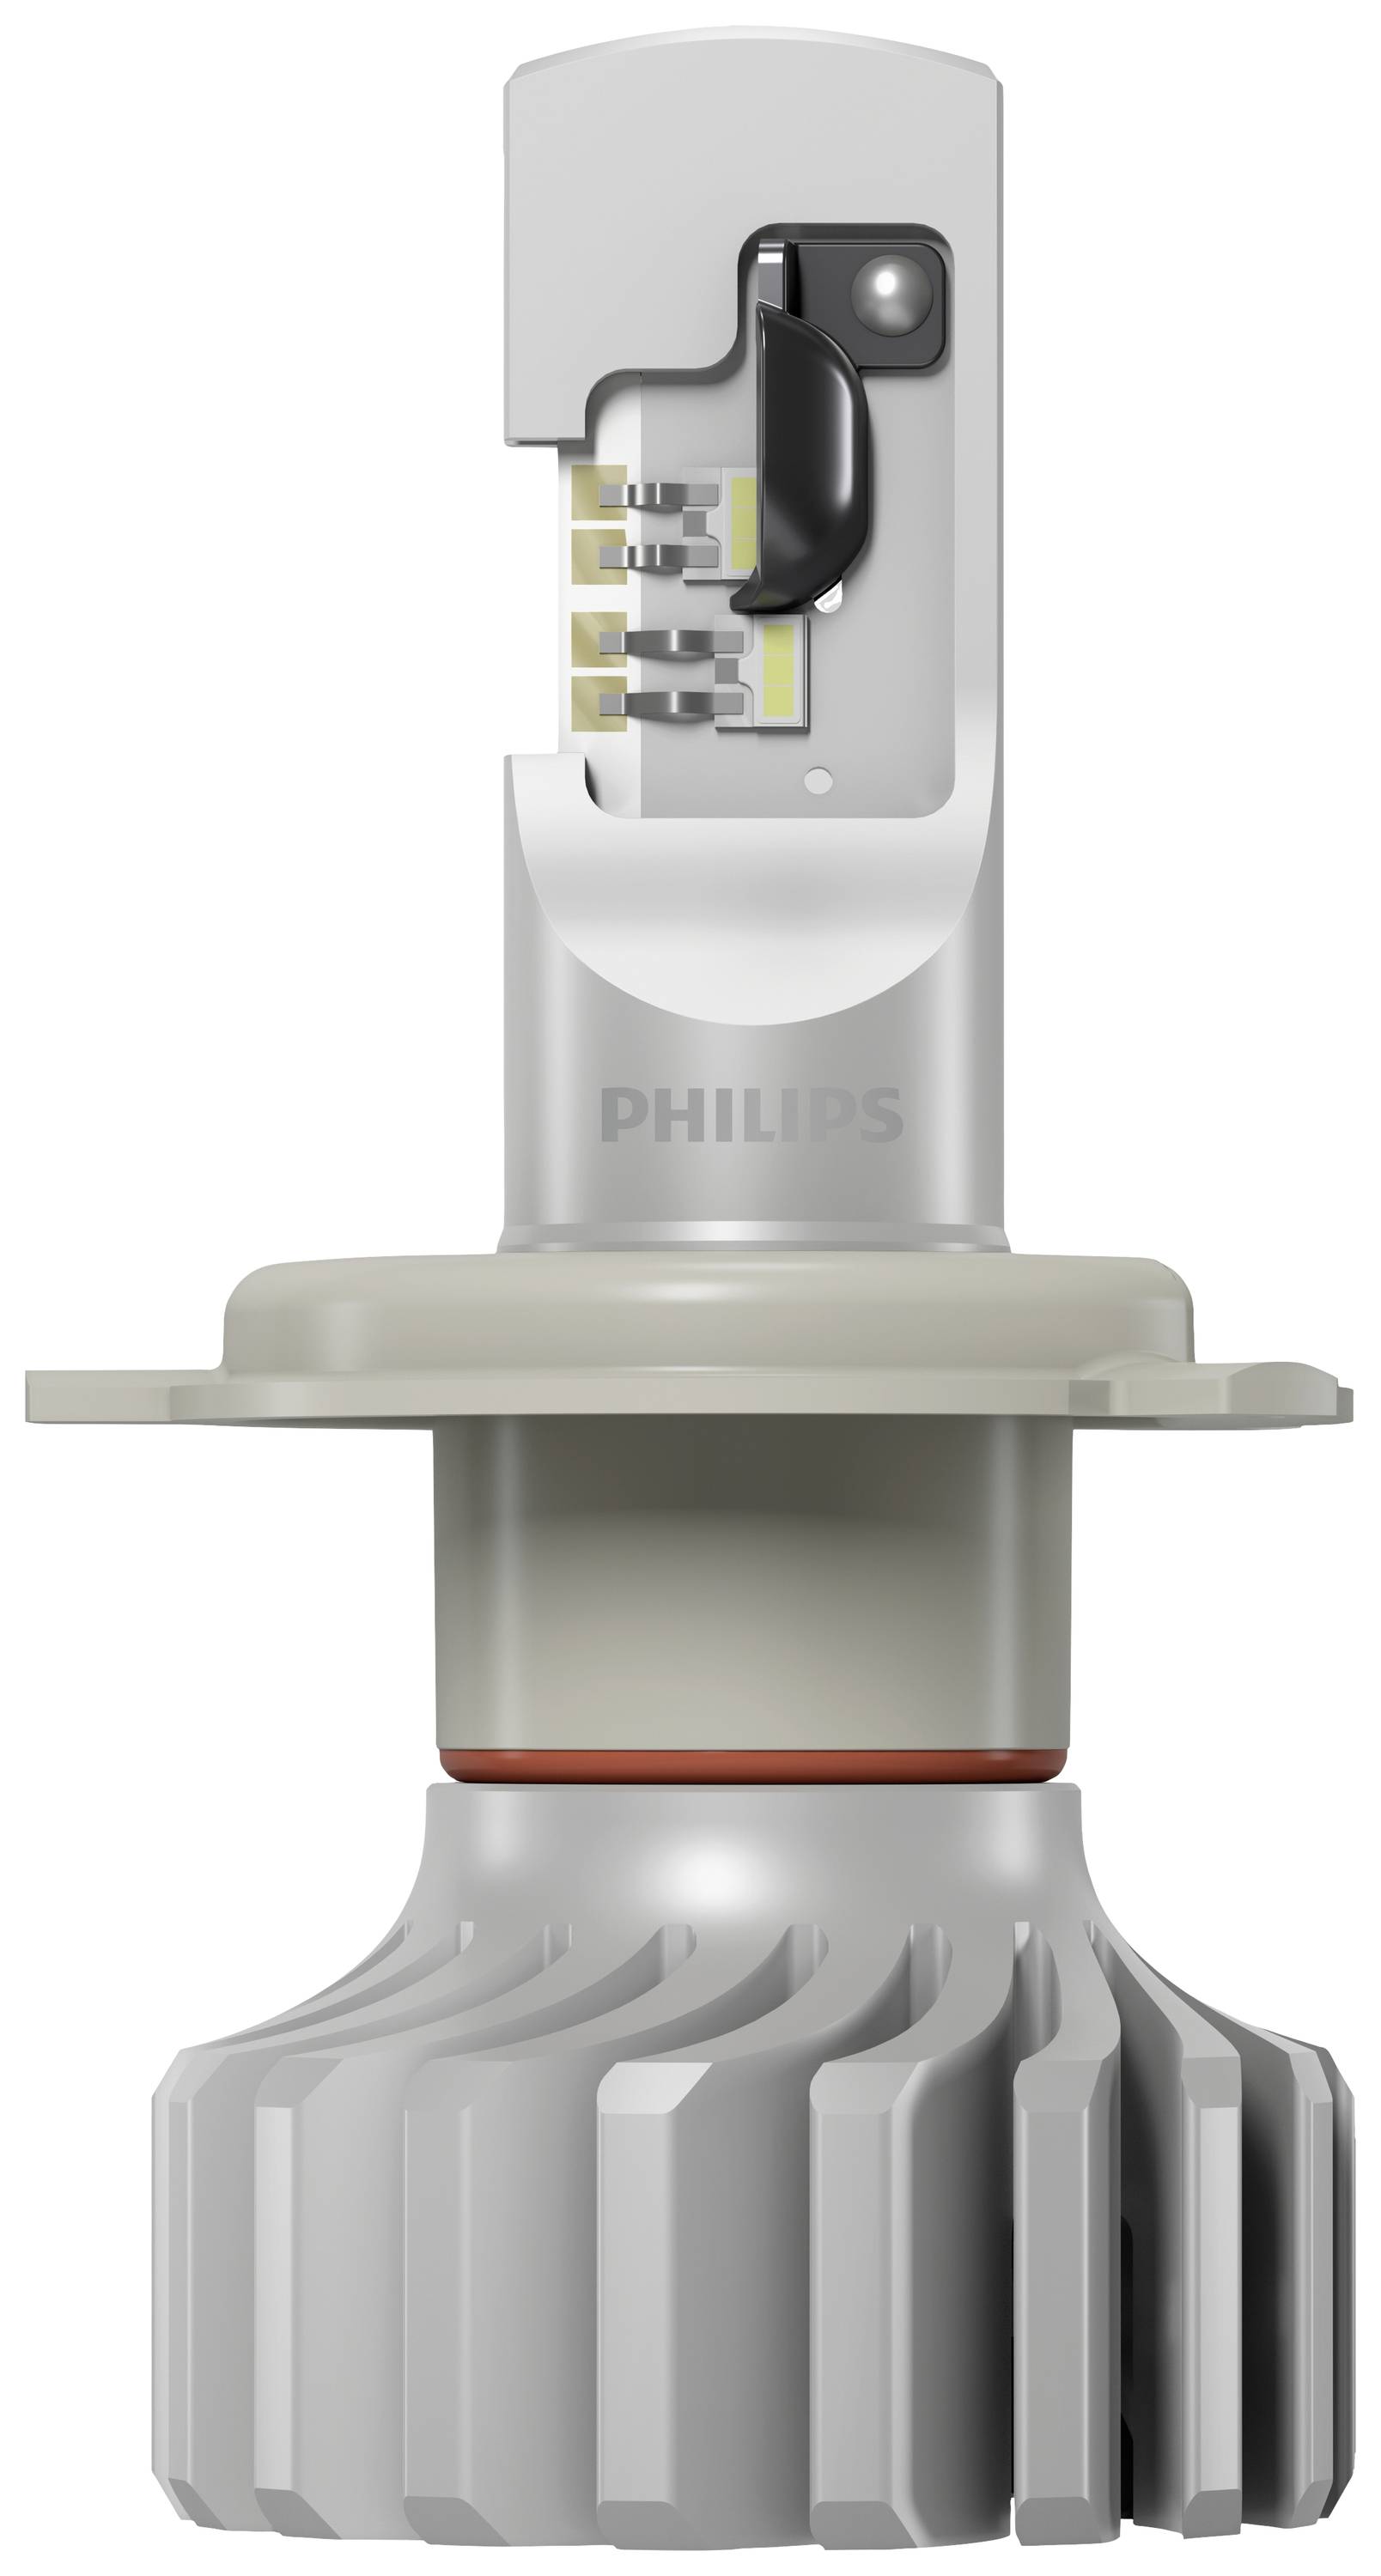 Mitmachen und Philips Ultinon Pro6000 H4-LED Nachrüstlampen